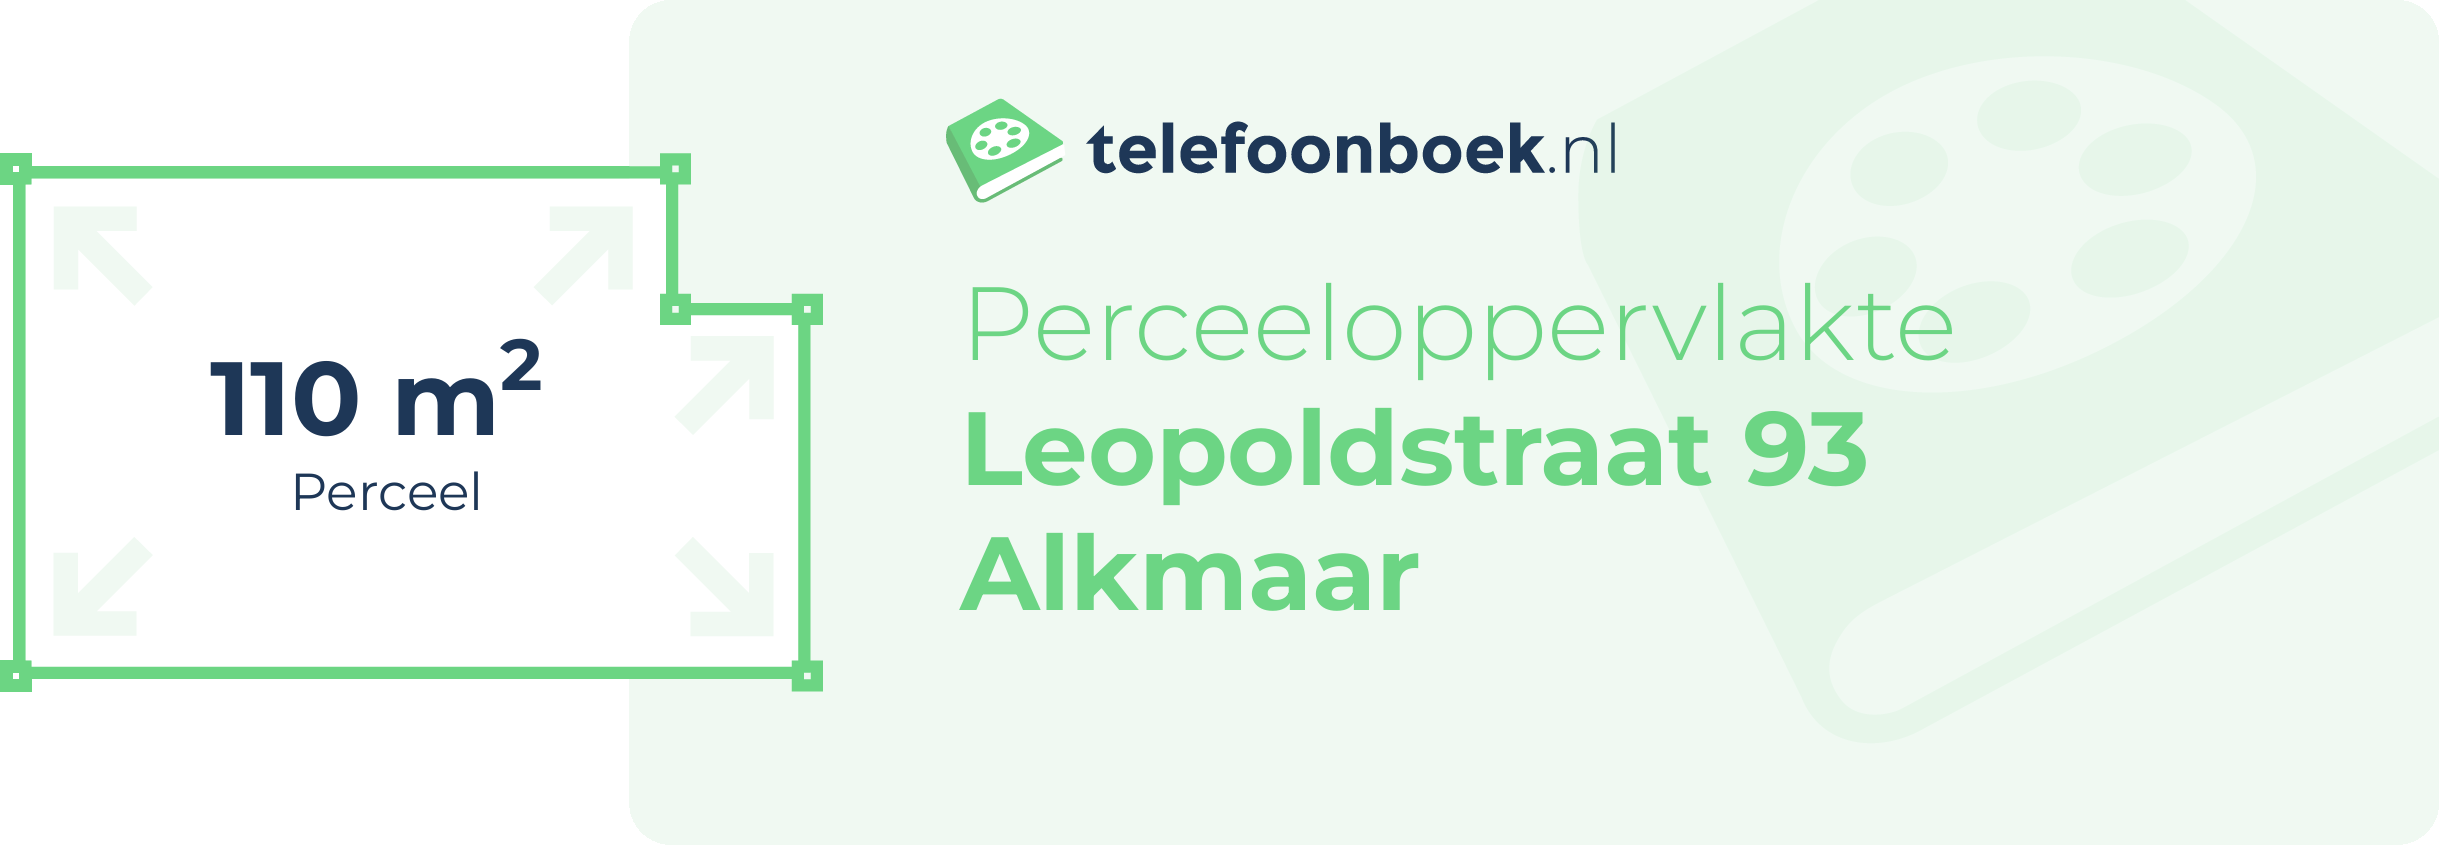 Perceeloppervlakte Leopoldstraat 93 Alkmaar